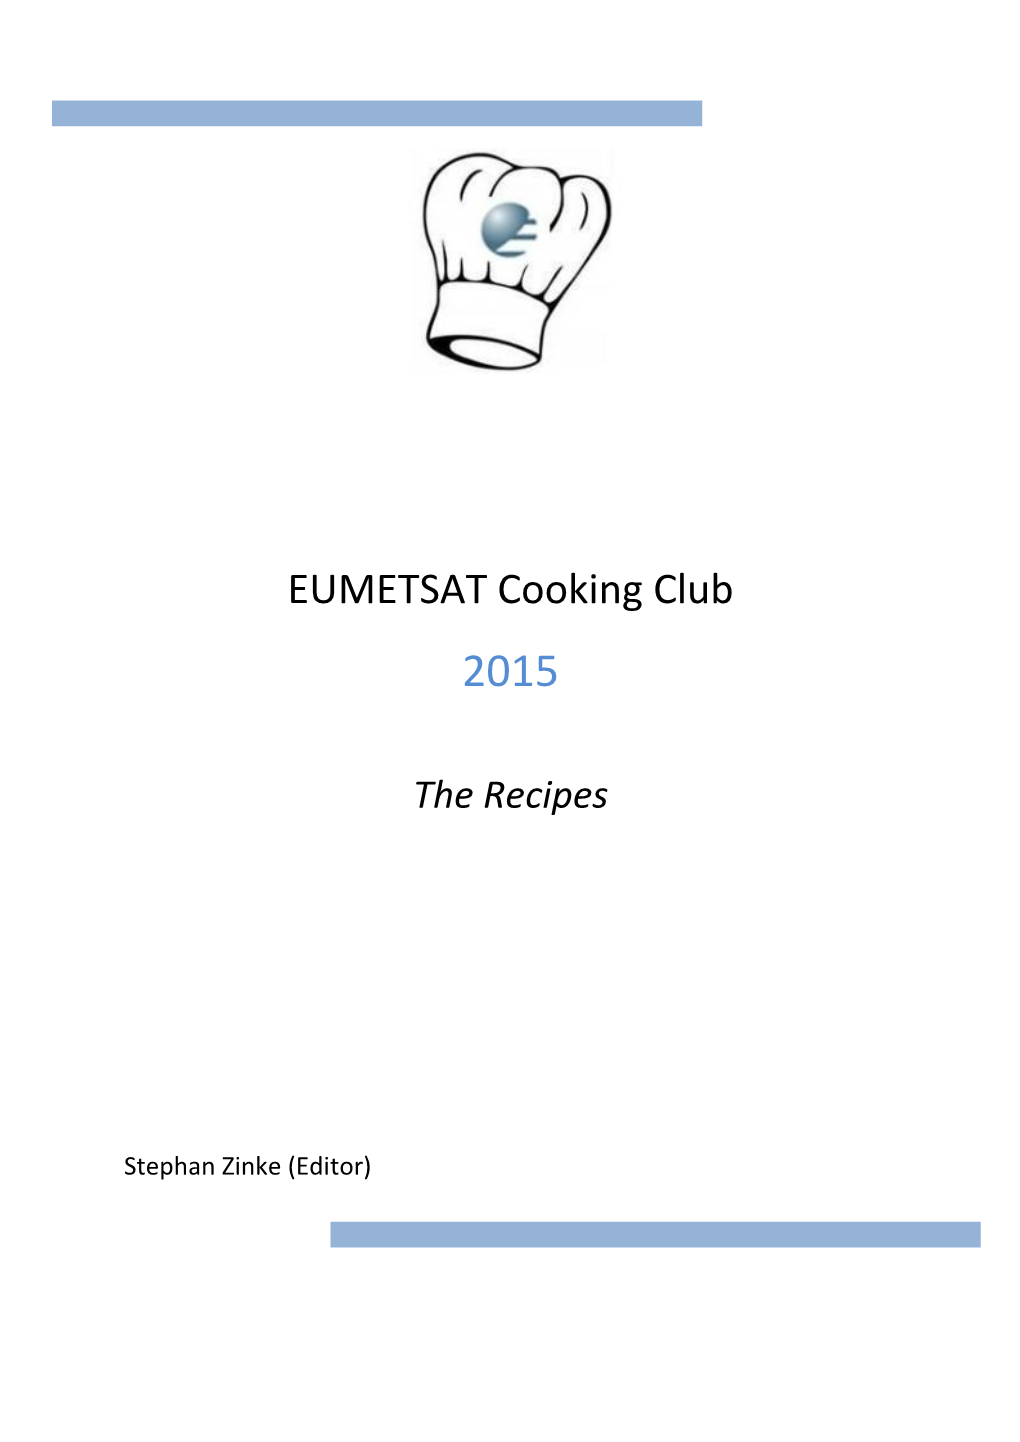 EUMETSAT Cooking Club 2015